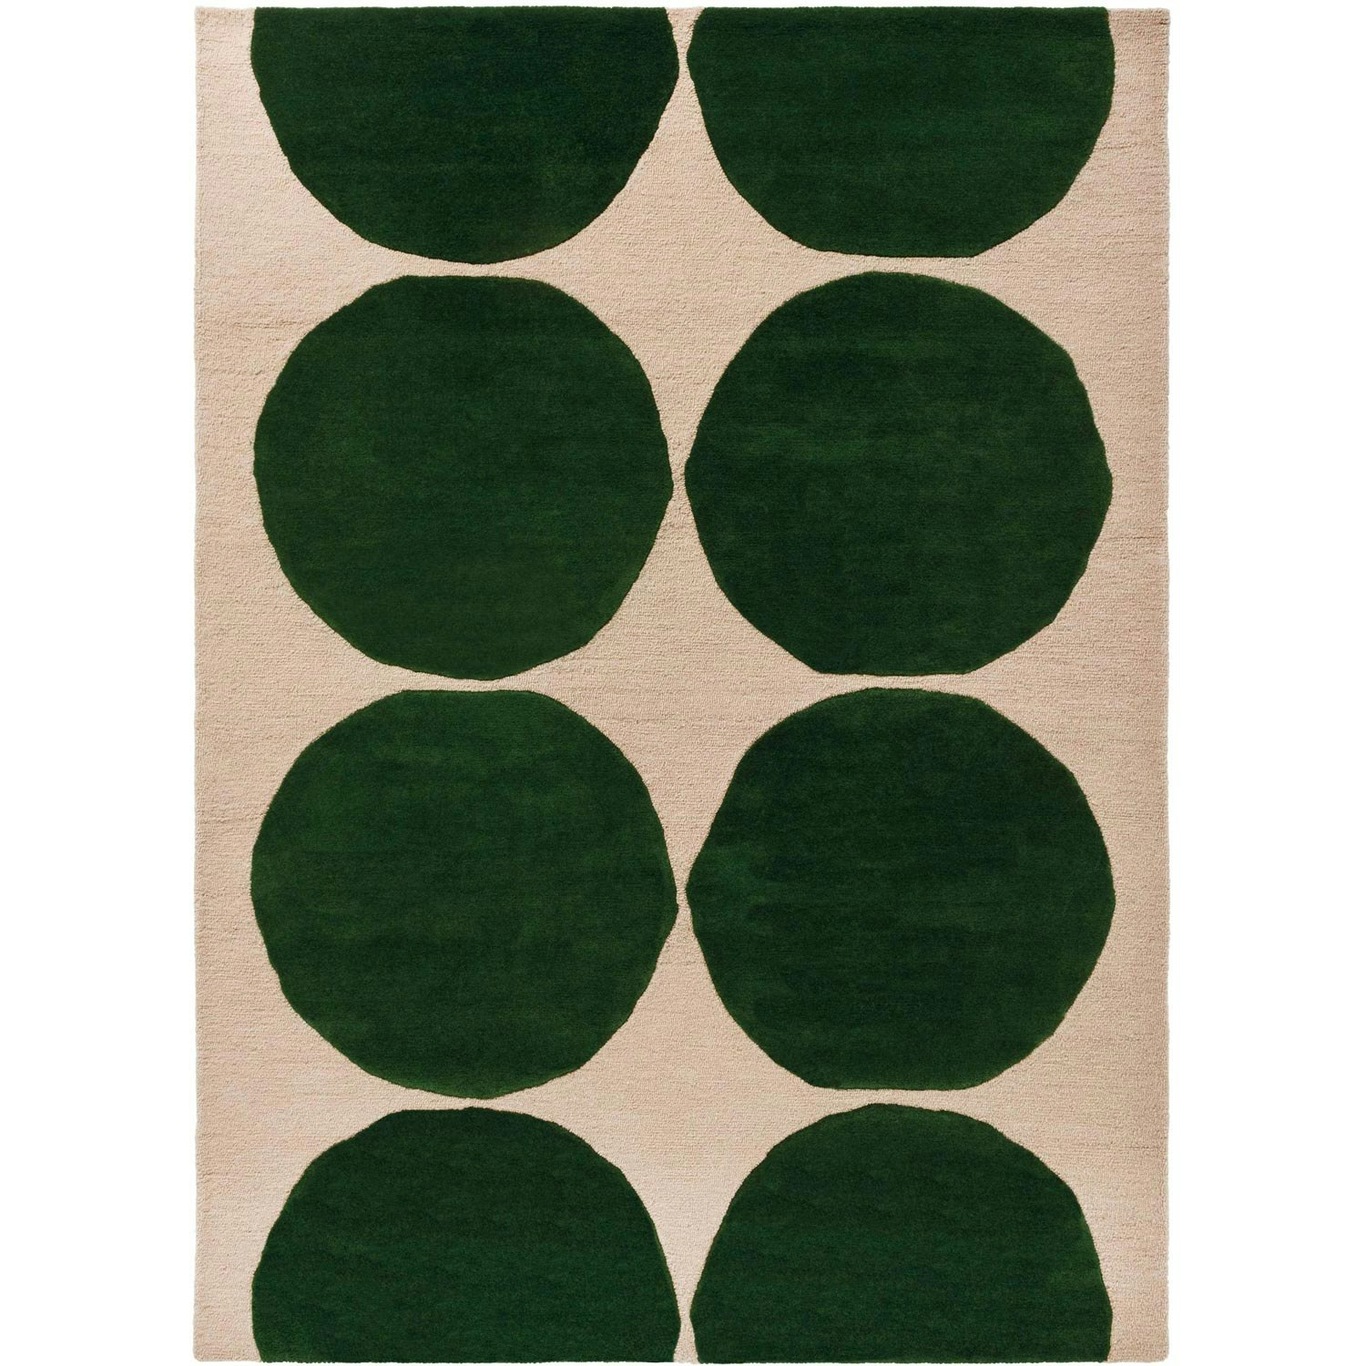 Marimekko Isot Kivet Tæppe 200x300 cm, Grønt